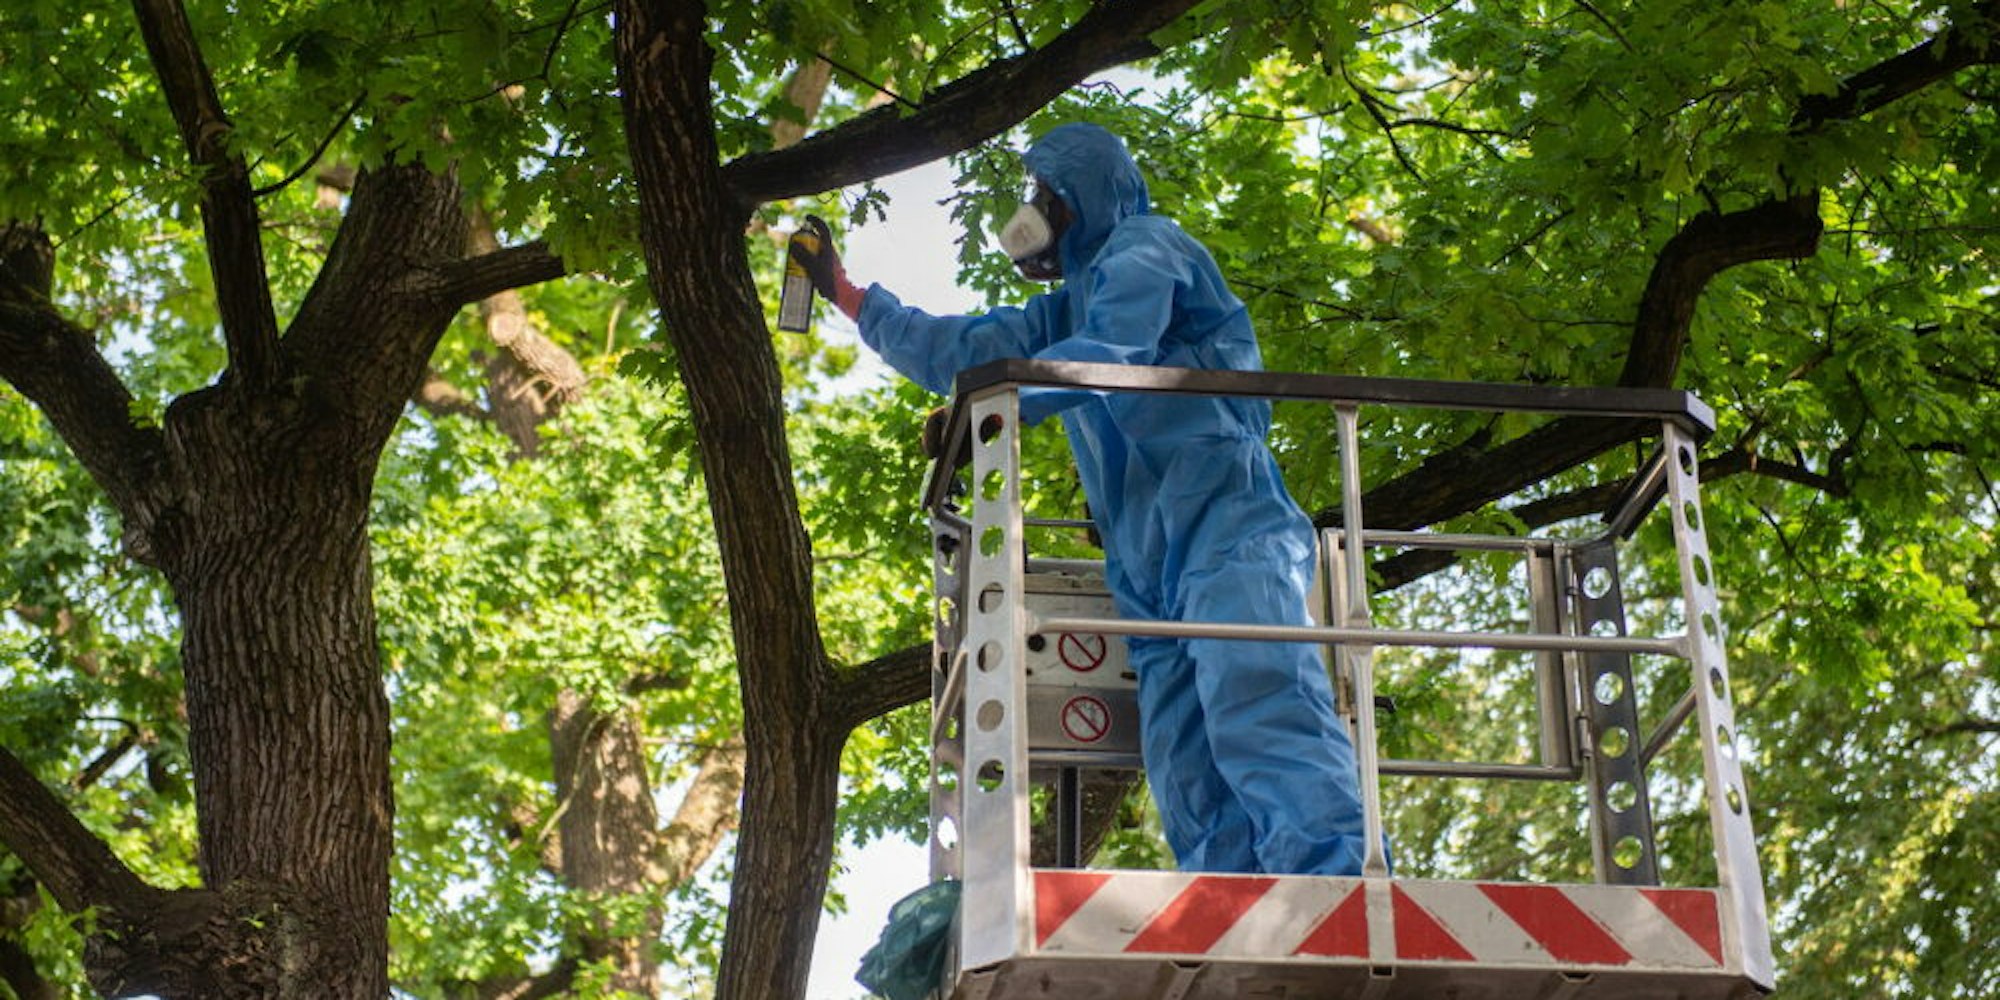 Schutzanzug und Gesichtsmaske sind vorgeschrieben, wenn Grün-Experten die Raupen von Bäumen entfernen.